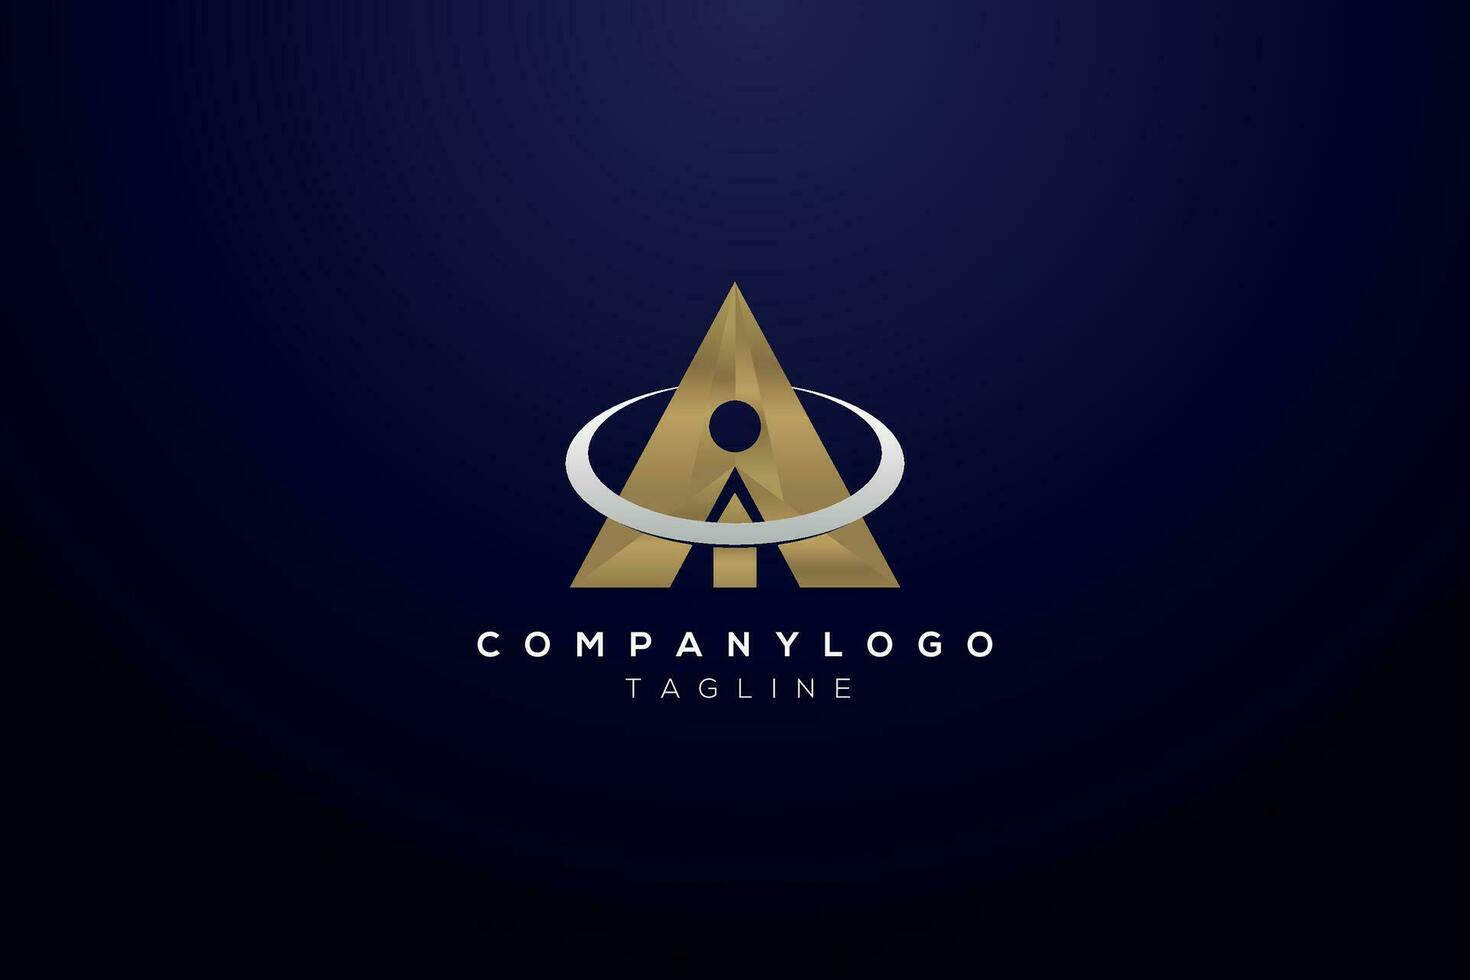 ai I a logo diseño inicial letra tecnología futurista corporativo negocio diseño artificial inteligencia Pro vector